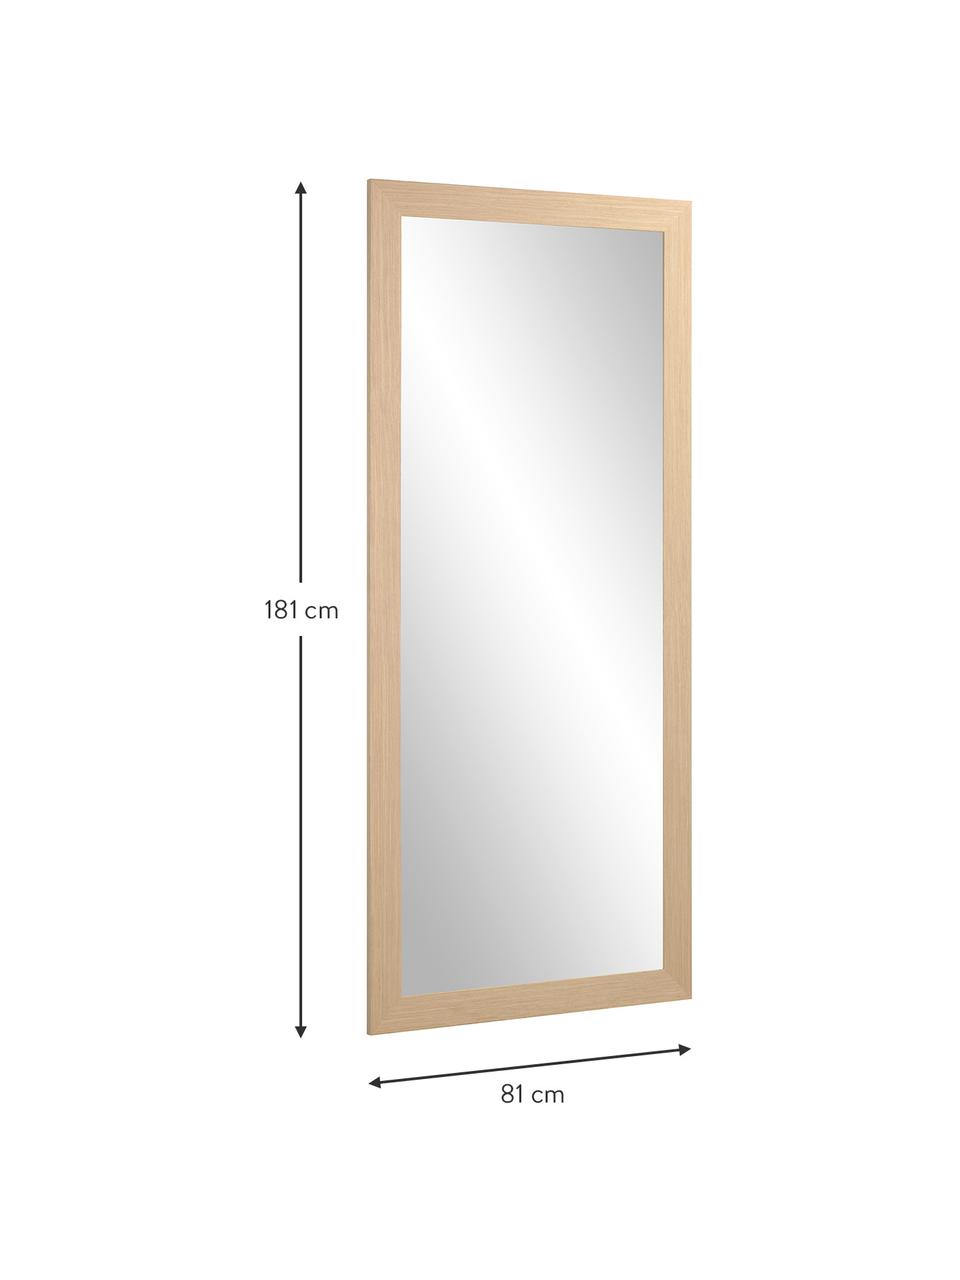 Eckiger Wandspiegel Yvaine mit beigem Holzrahmen, Rahmen: Holz, Spiegelfläche: Spiegelglas, Beige, 81 x 181 cm